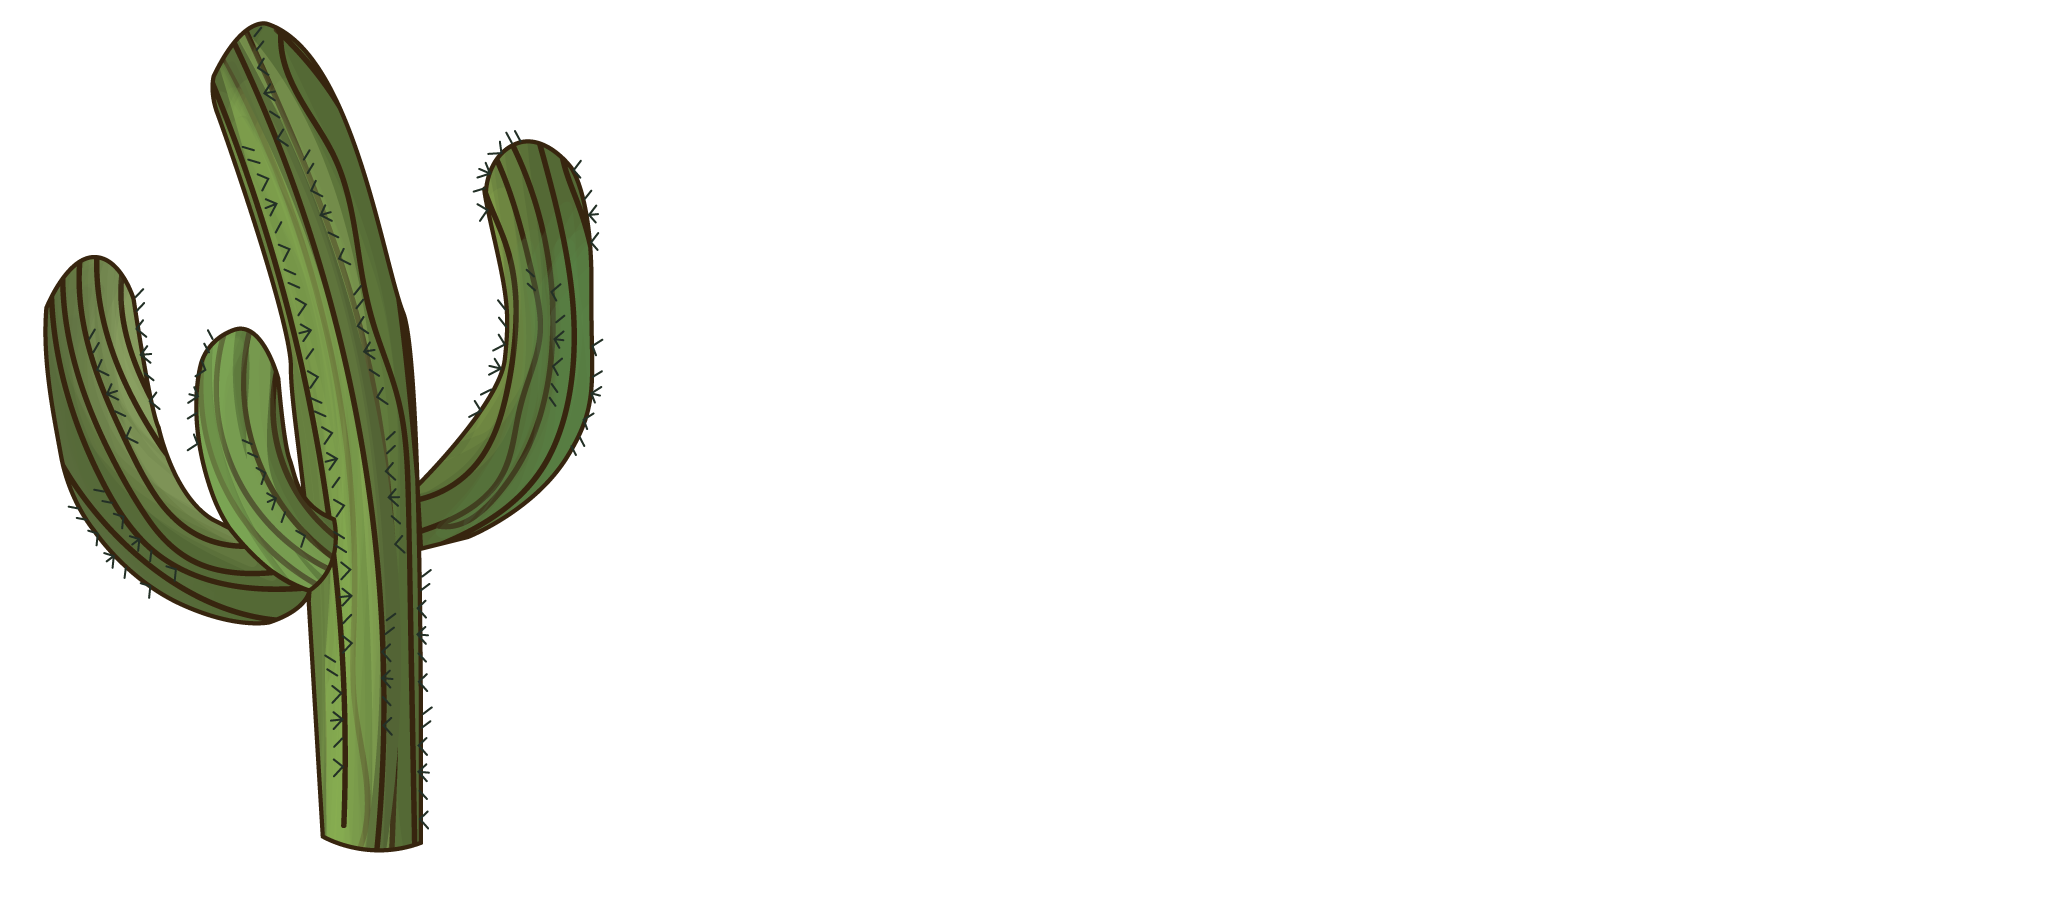 Restaurant Kaktus logo i Præstø